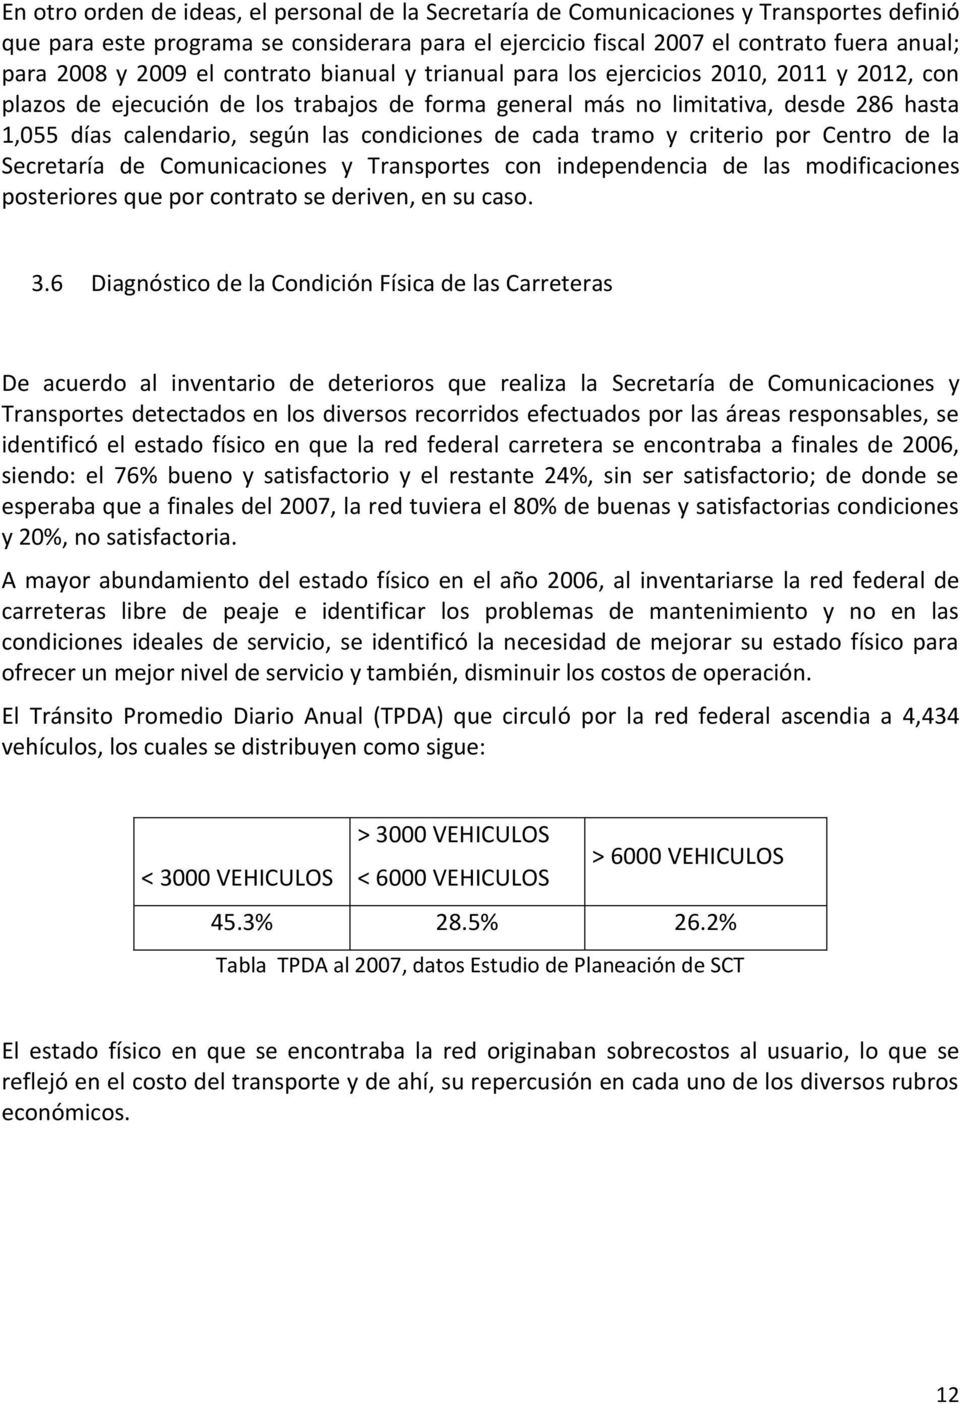 condiciones de cada tramo y criterio por Centro de la Secretaría de Comunicaciones y Transportes con independencia de las modificaciones posteriores que por contrato se deriven, en su caso. 3.